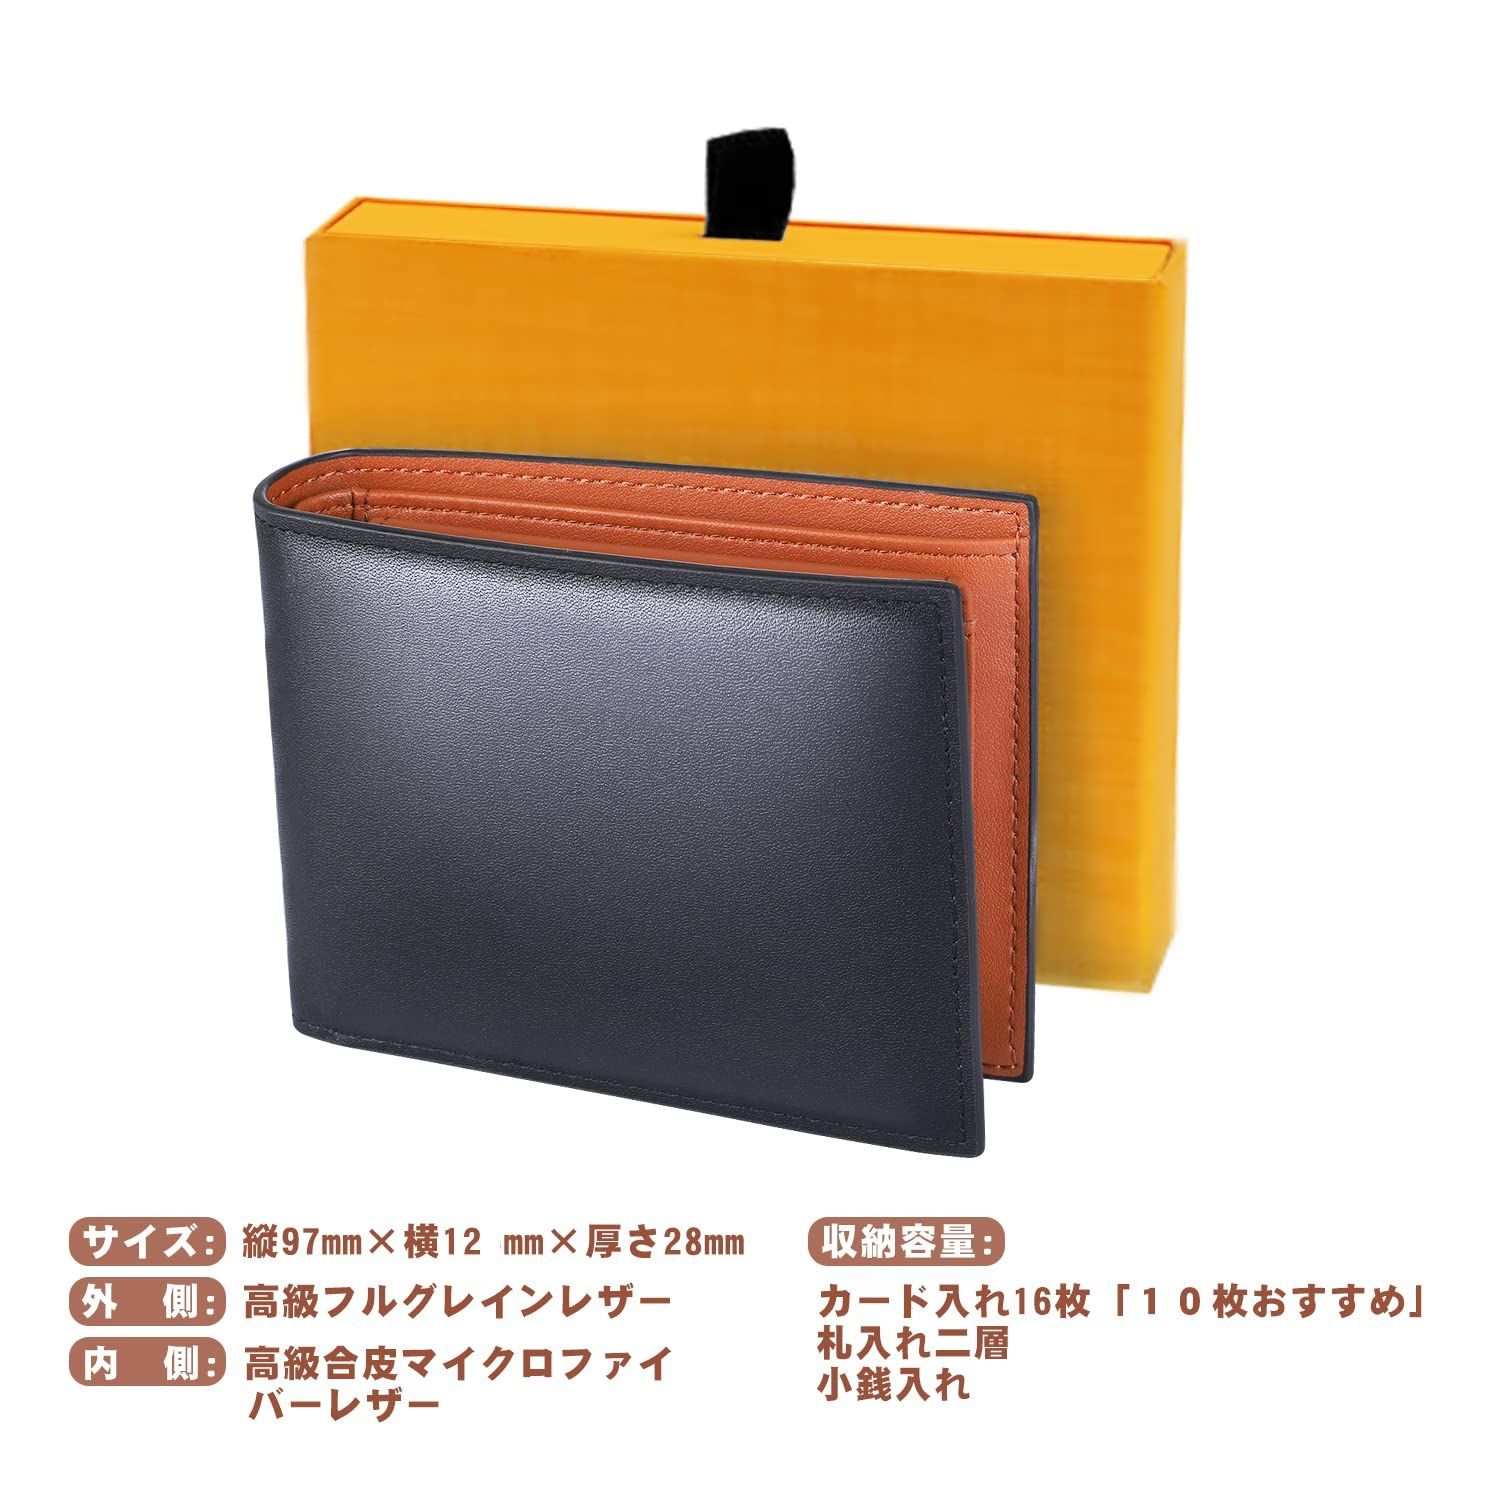 売り出し 財布 二つ折り メンズ 磁気防止 RFID スキミング防止